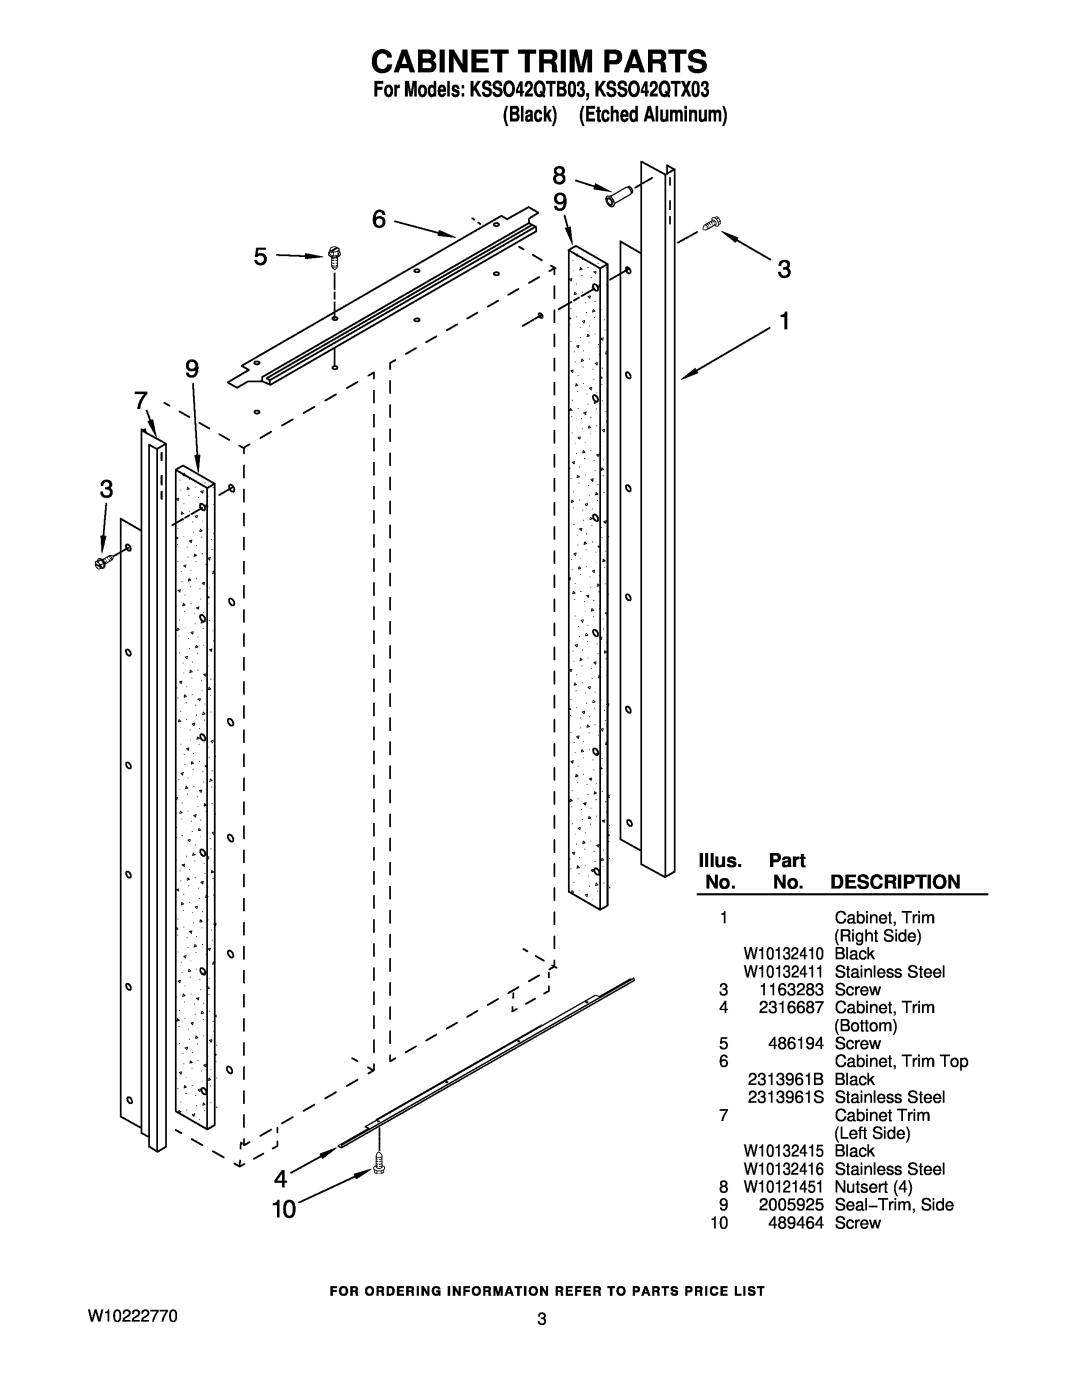 KitchenAid manual Cabinet Trim Parts, For Models KSSO42QTB03, KSSO42QTX03 Black Etched Aluminum, Illus, Description 